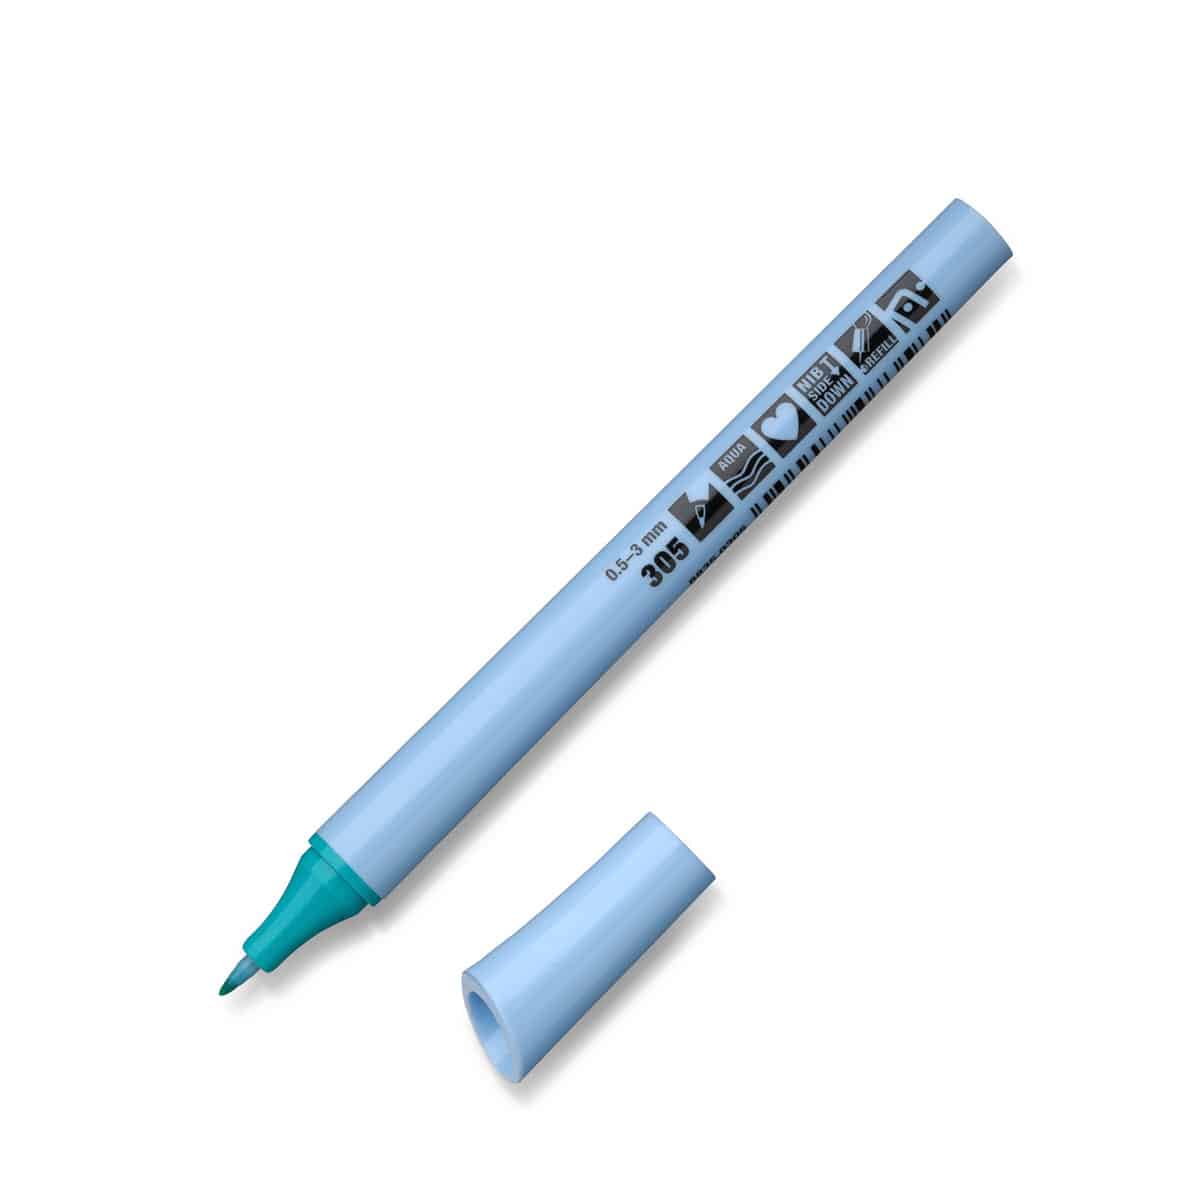 Neuland FineOne® Flex, flexible fiber nib 0.5-3 mm, single colors- 305 ocean